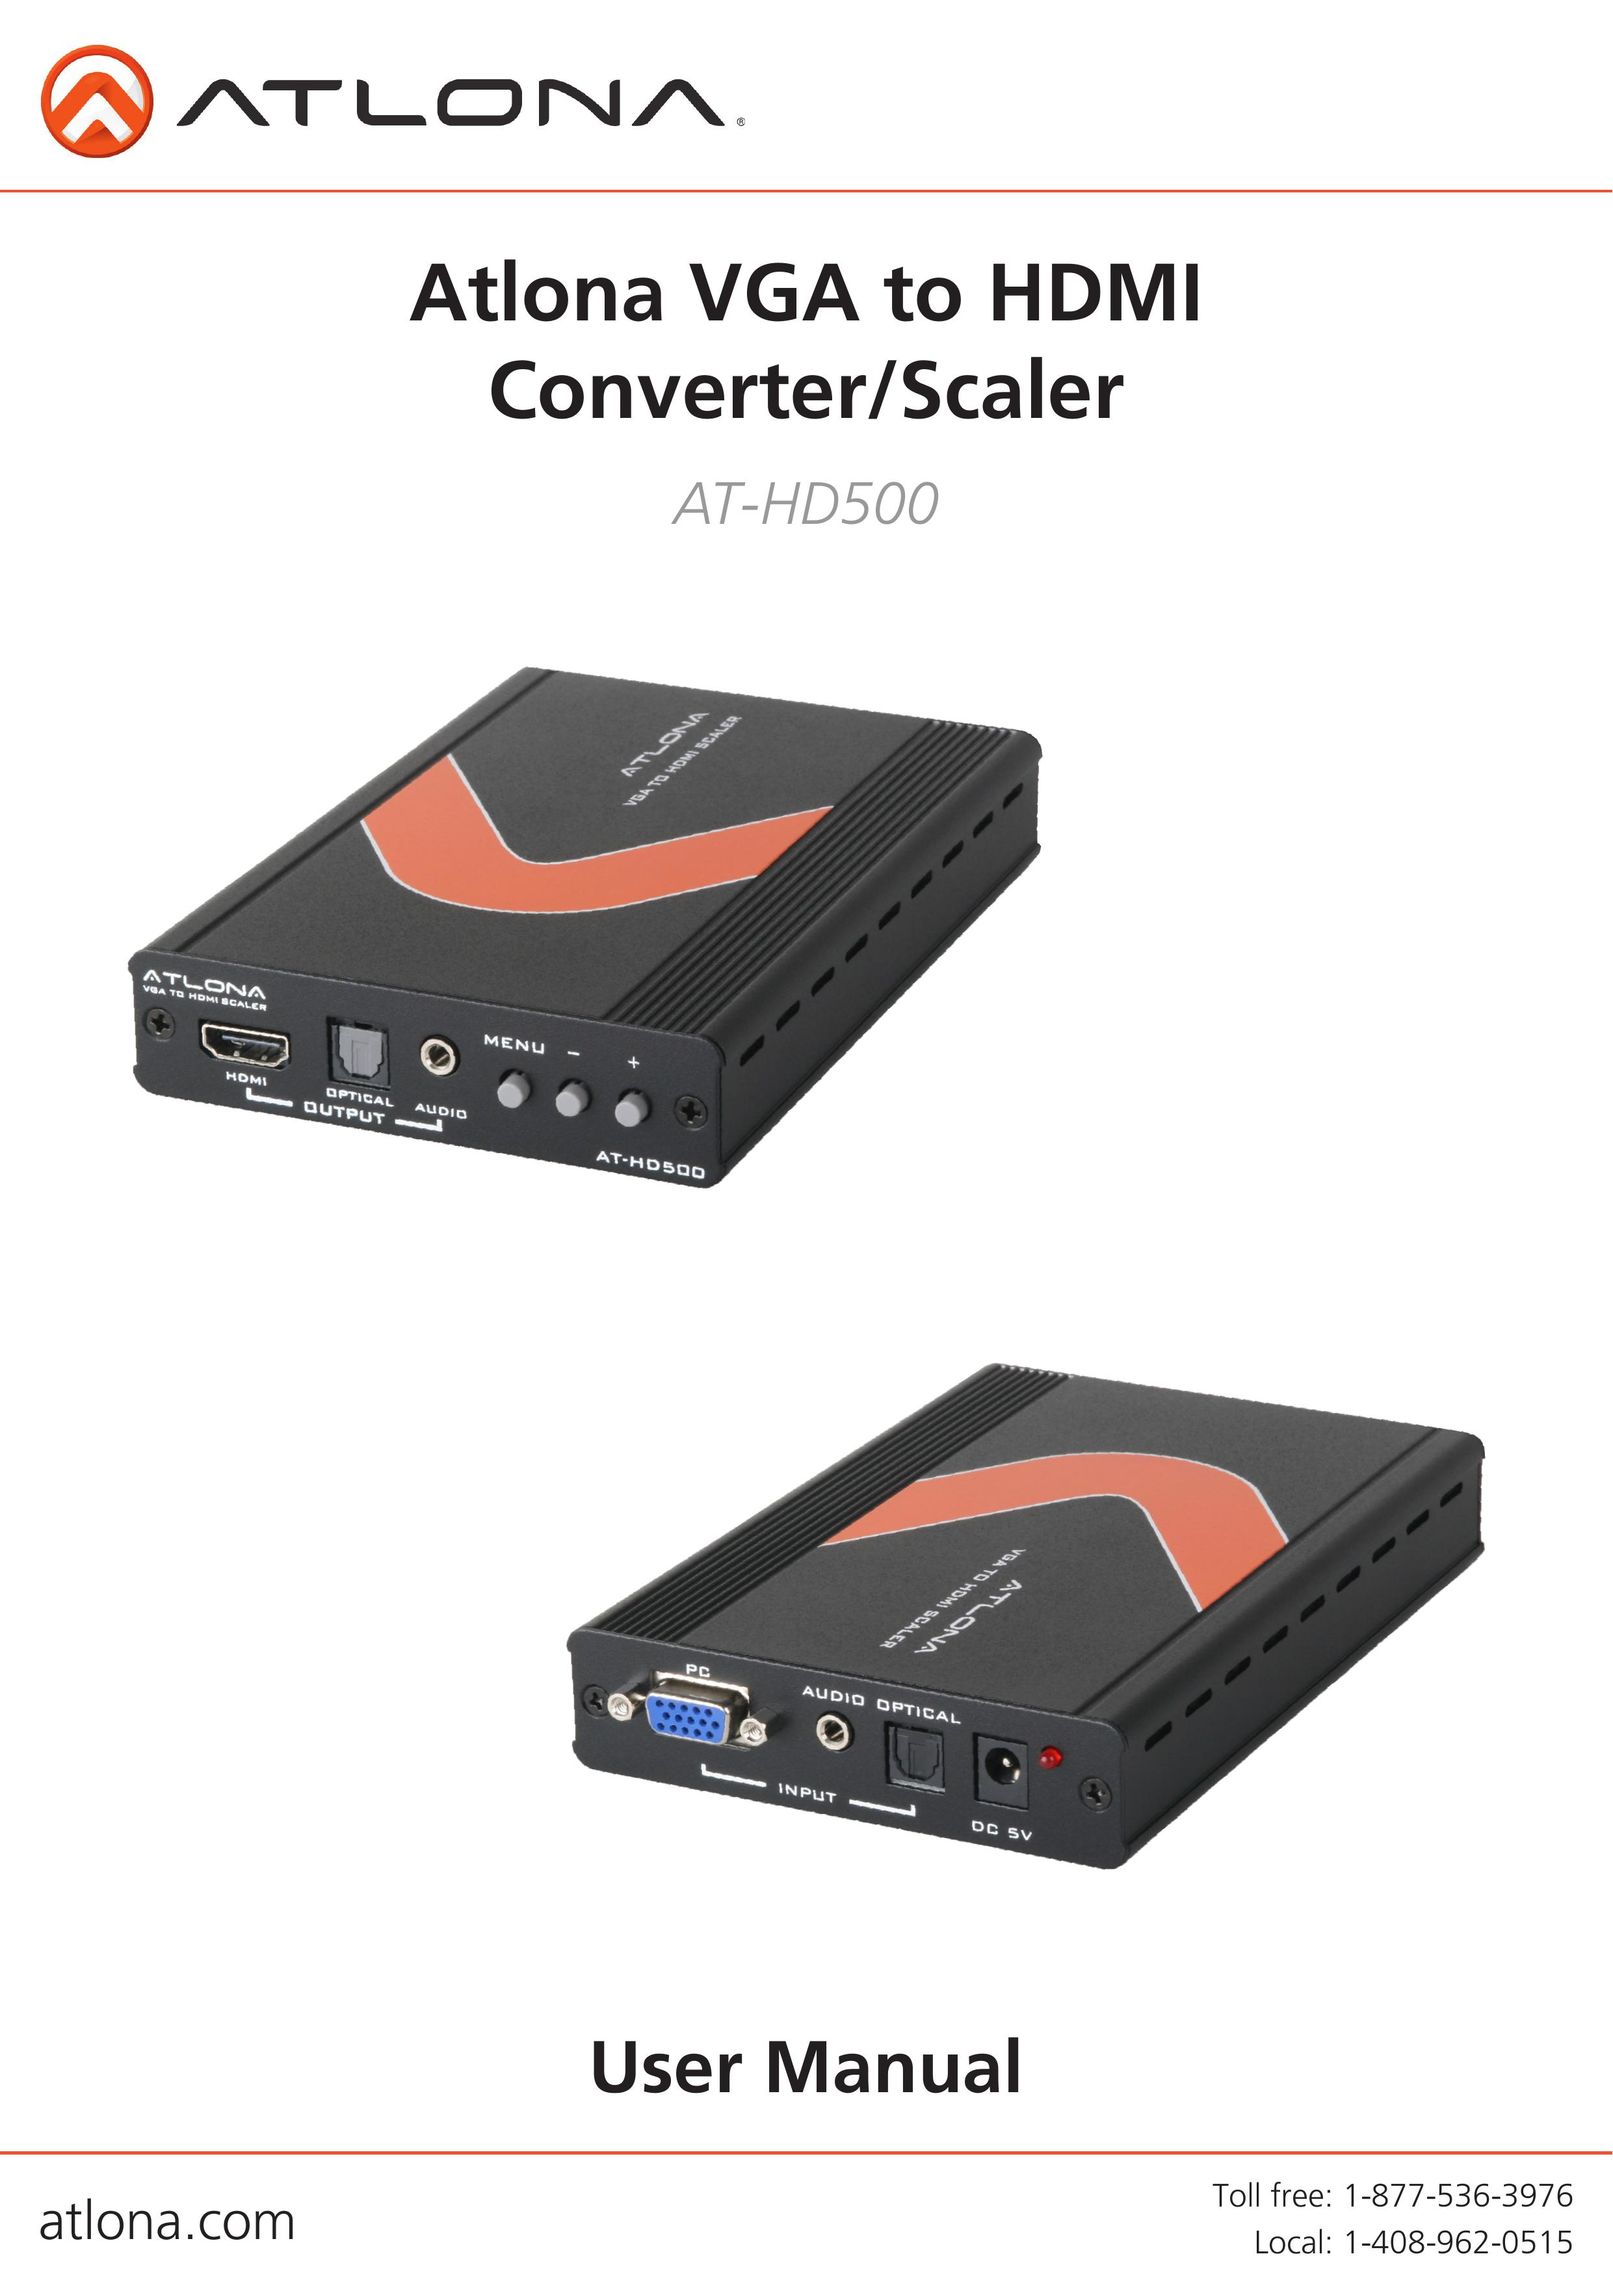 Atlona AT-HD500 TV Converter Box User Manual